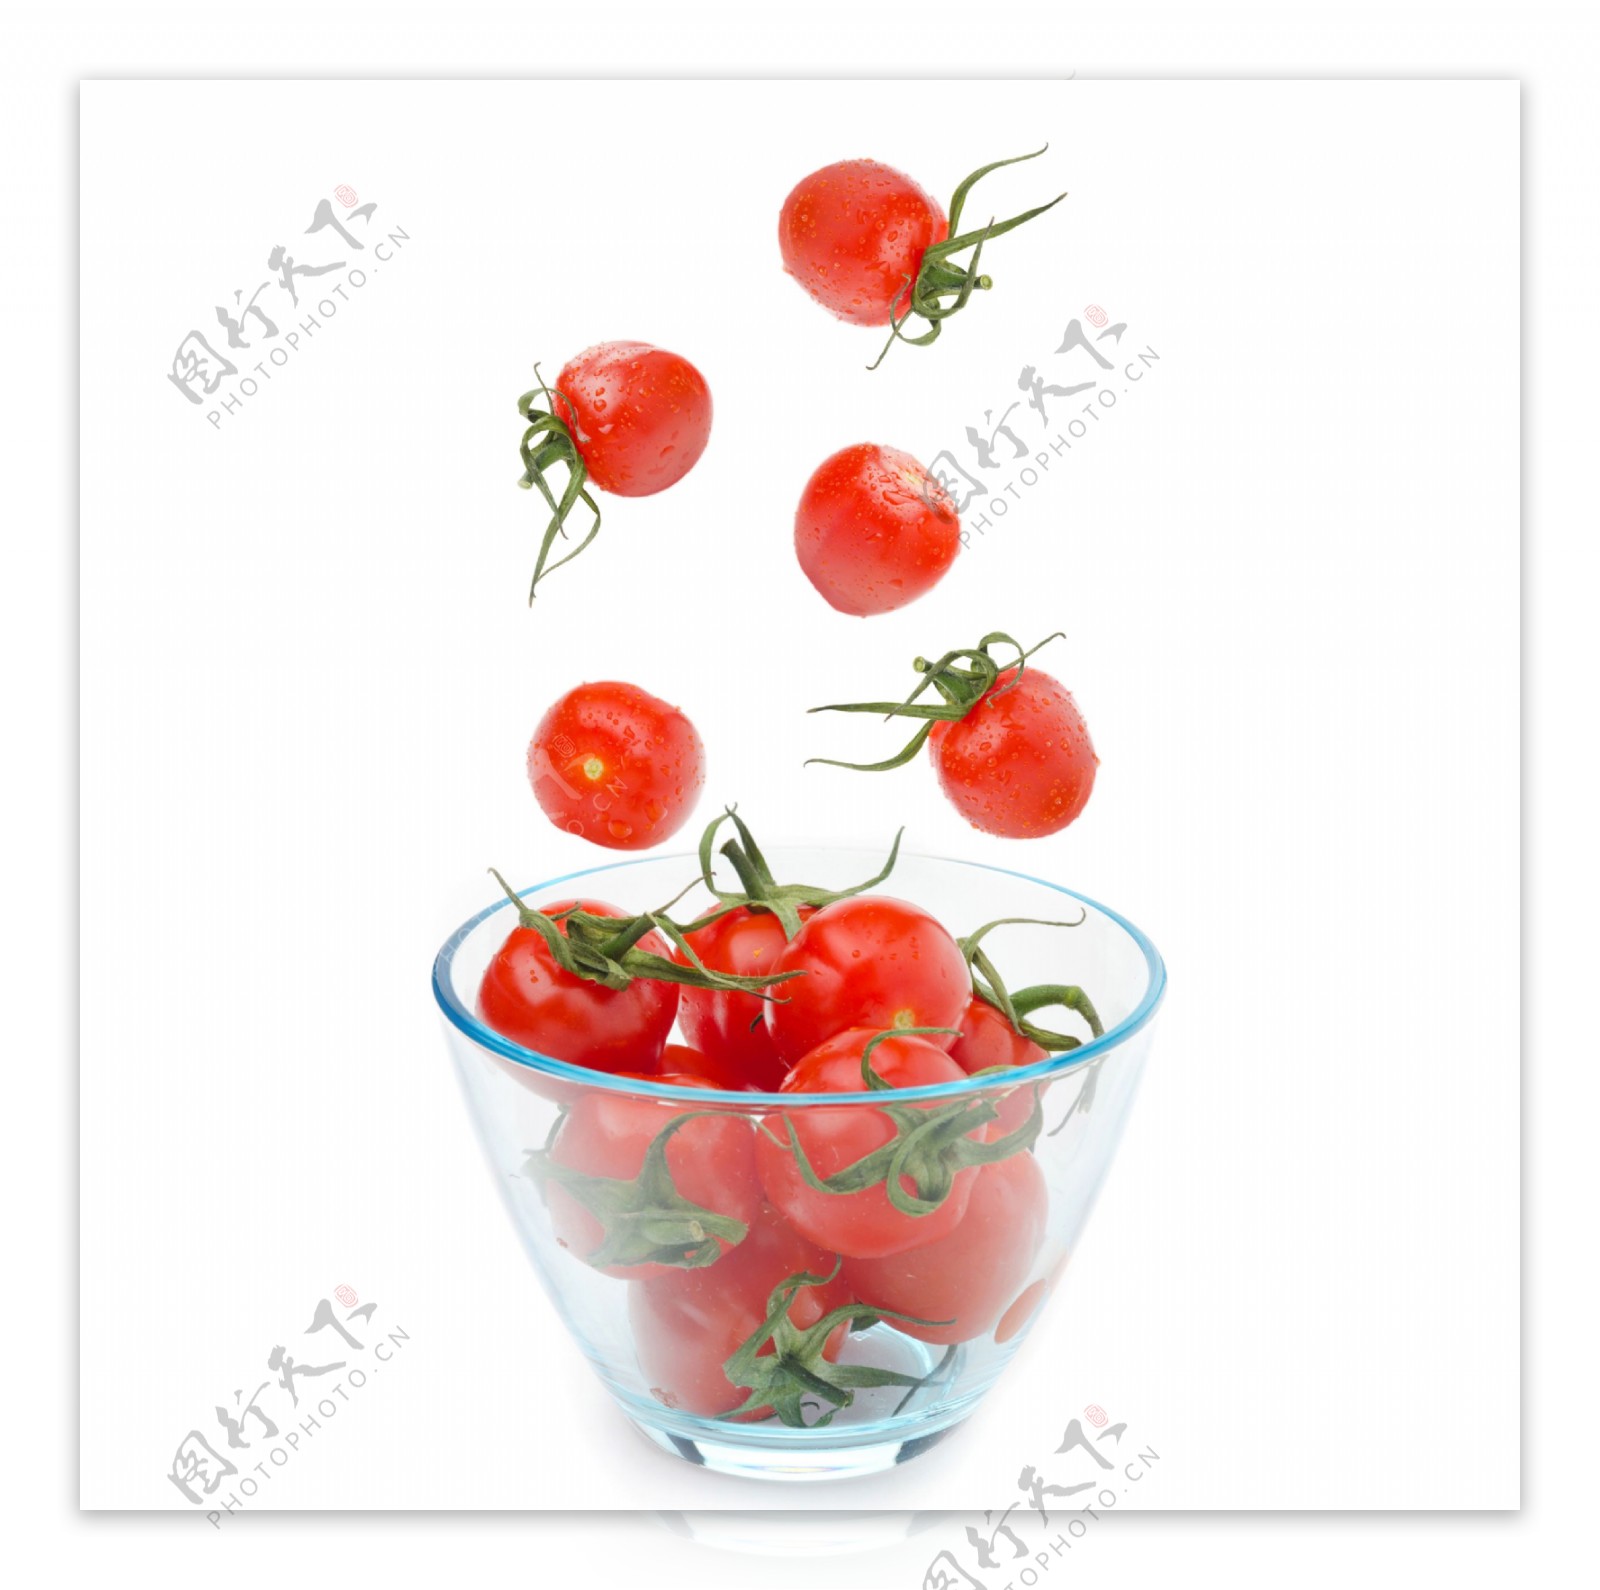 容器里的西红柿图片